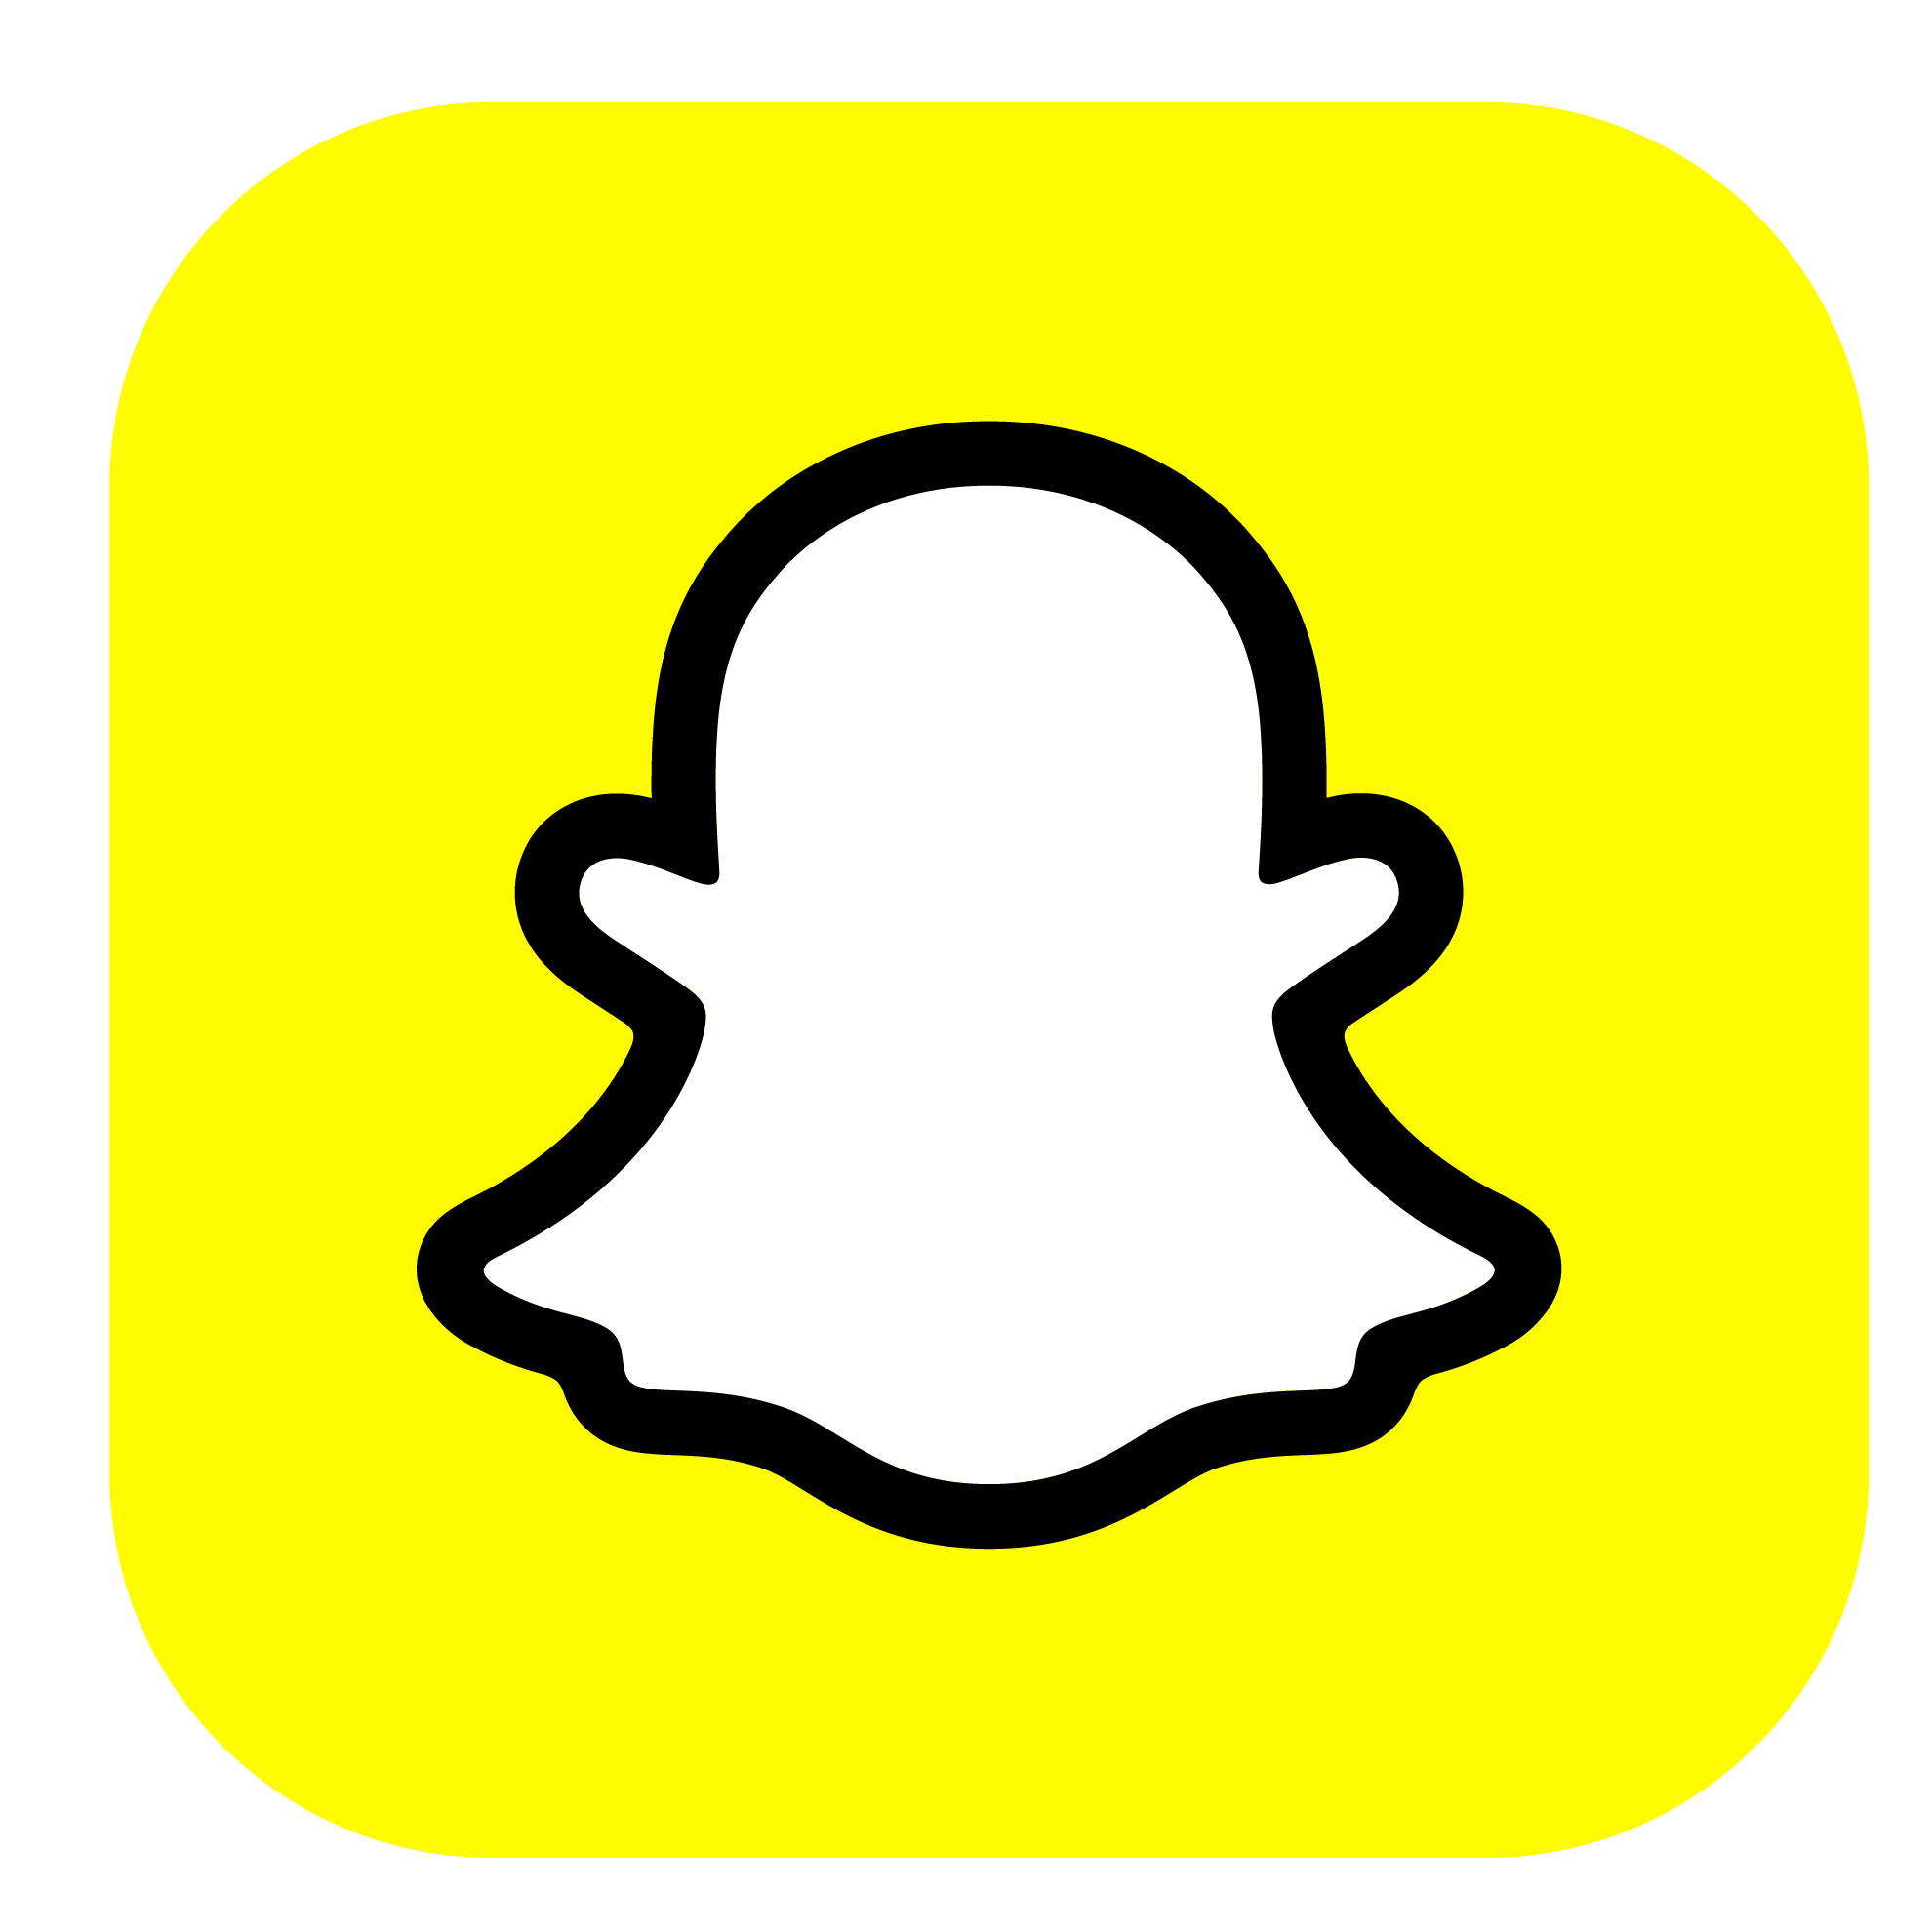 Logotipo Snapchat incluido al realizar tu Portabilidad